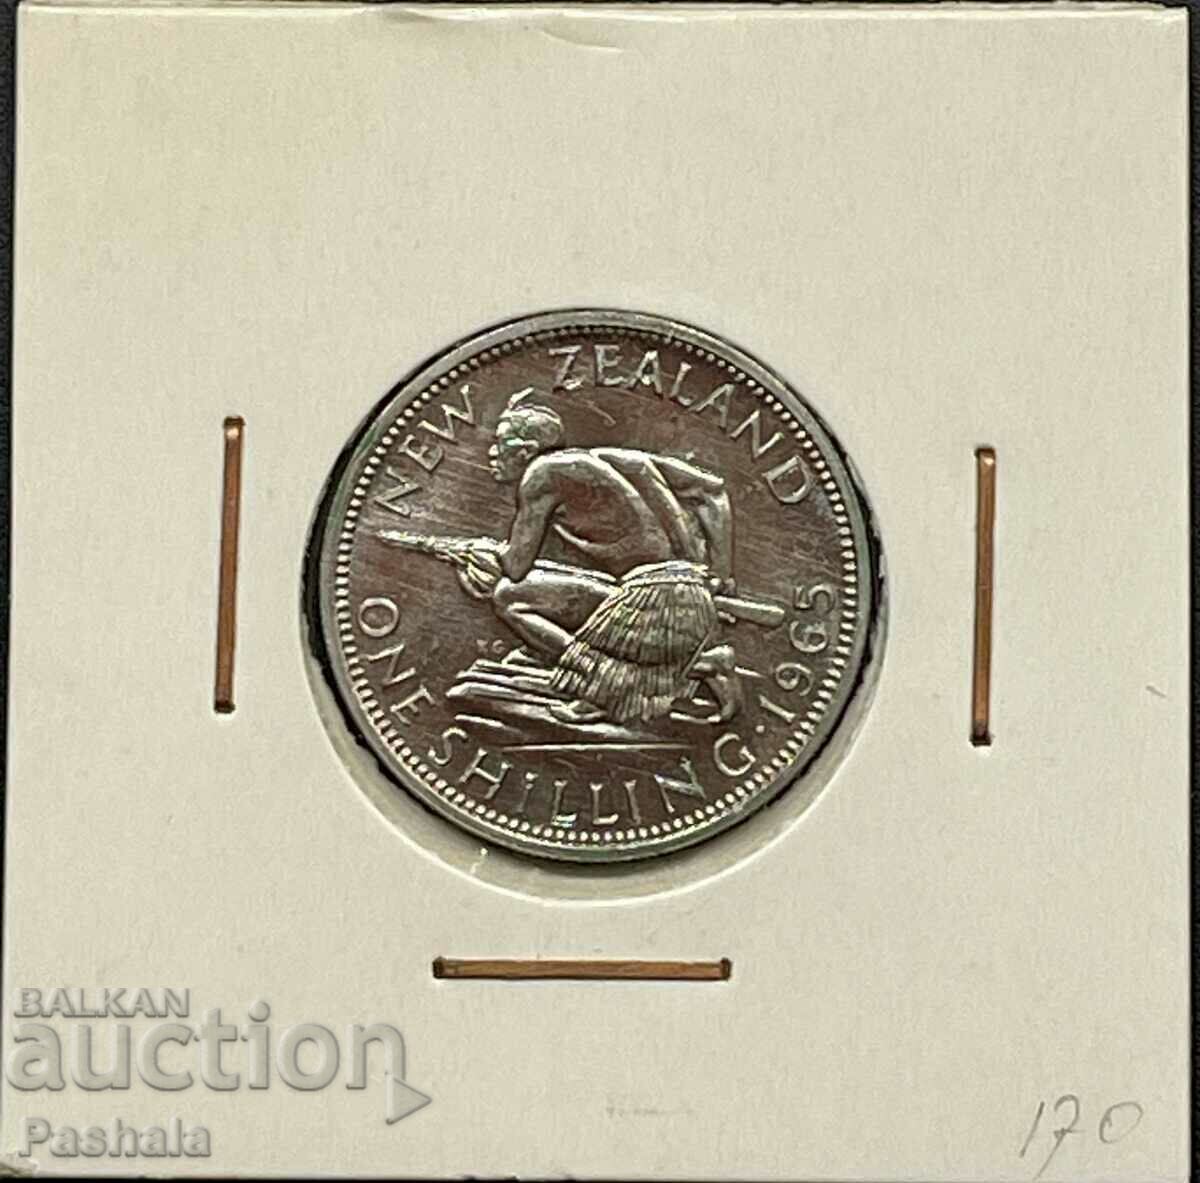 New Zealand 1 Shilling 1965